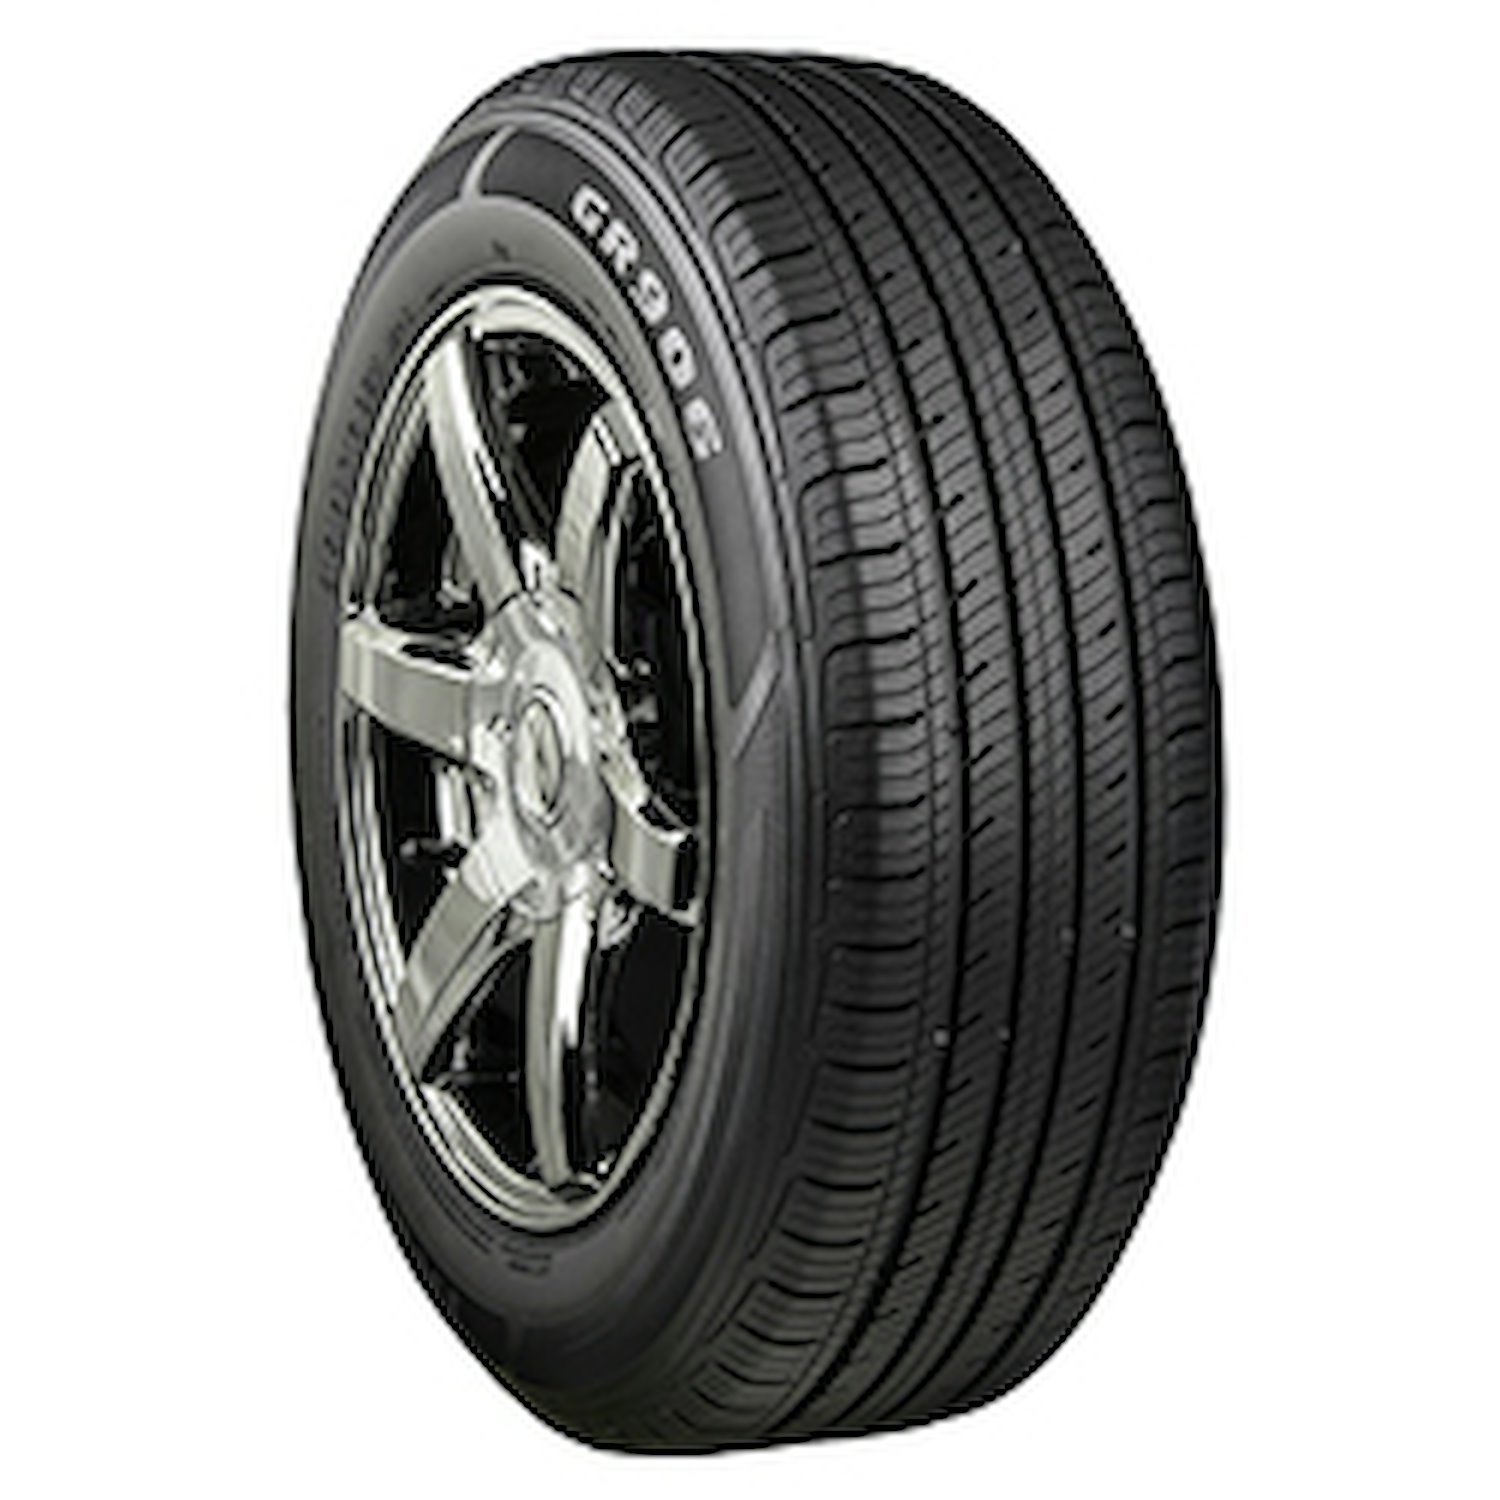 GR906 Tire, 225/70R15 100T